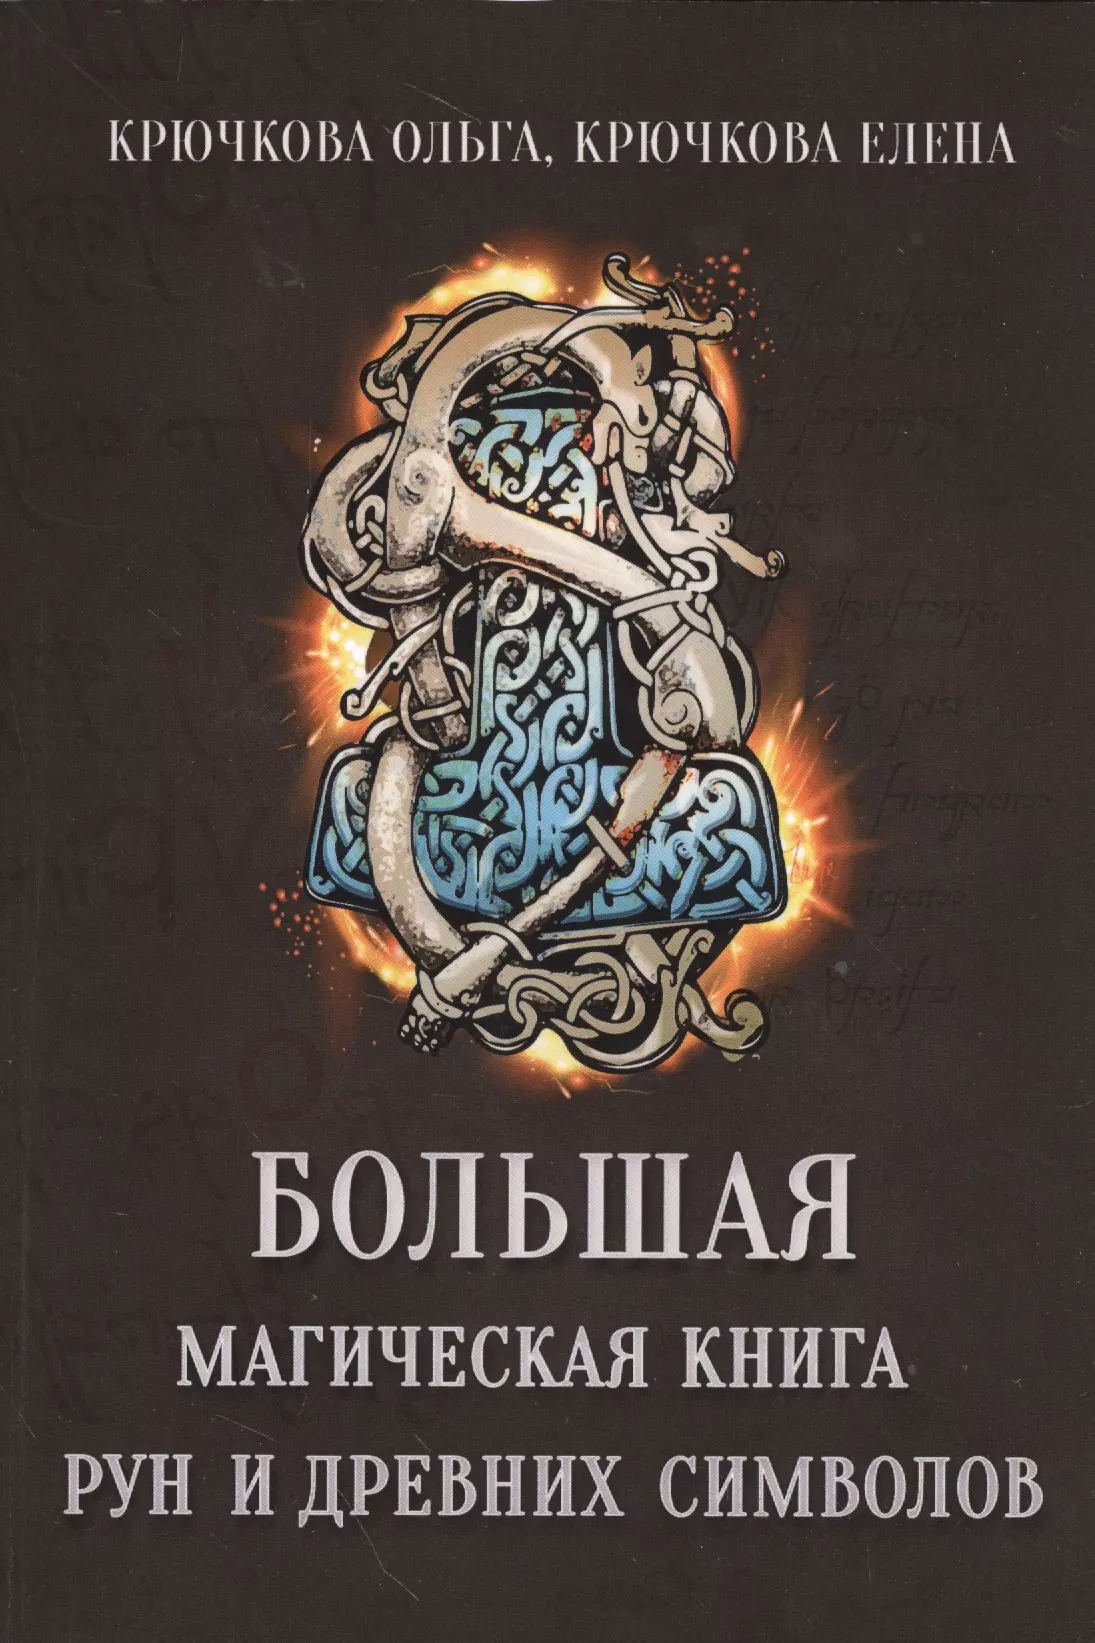 Крючкова Ольга Евгеньевна - Большая магическая книга рун и древних символов